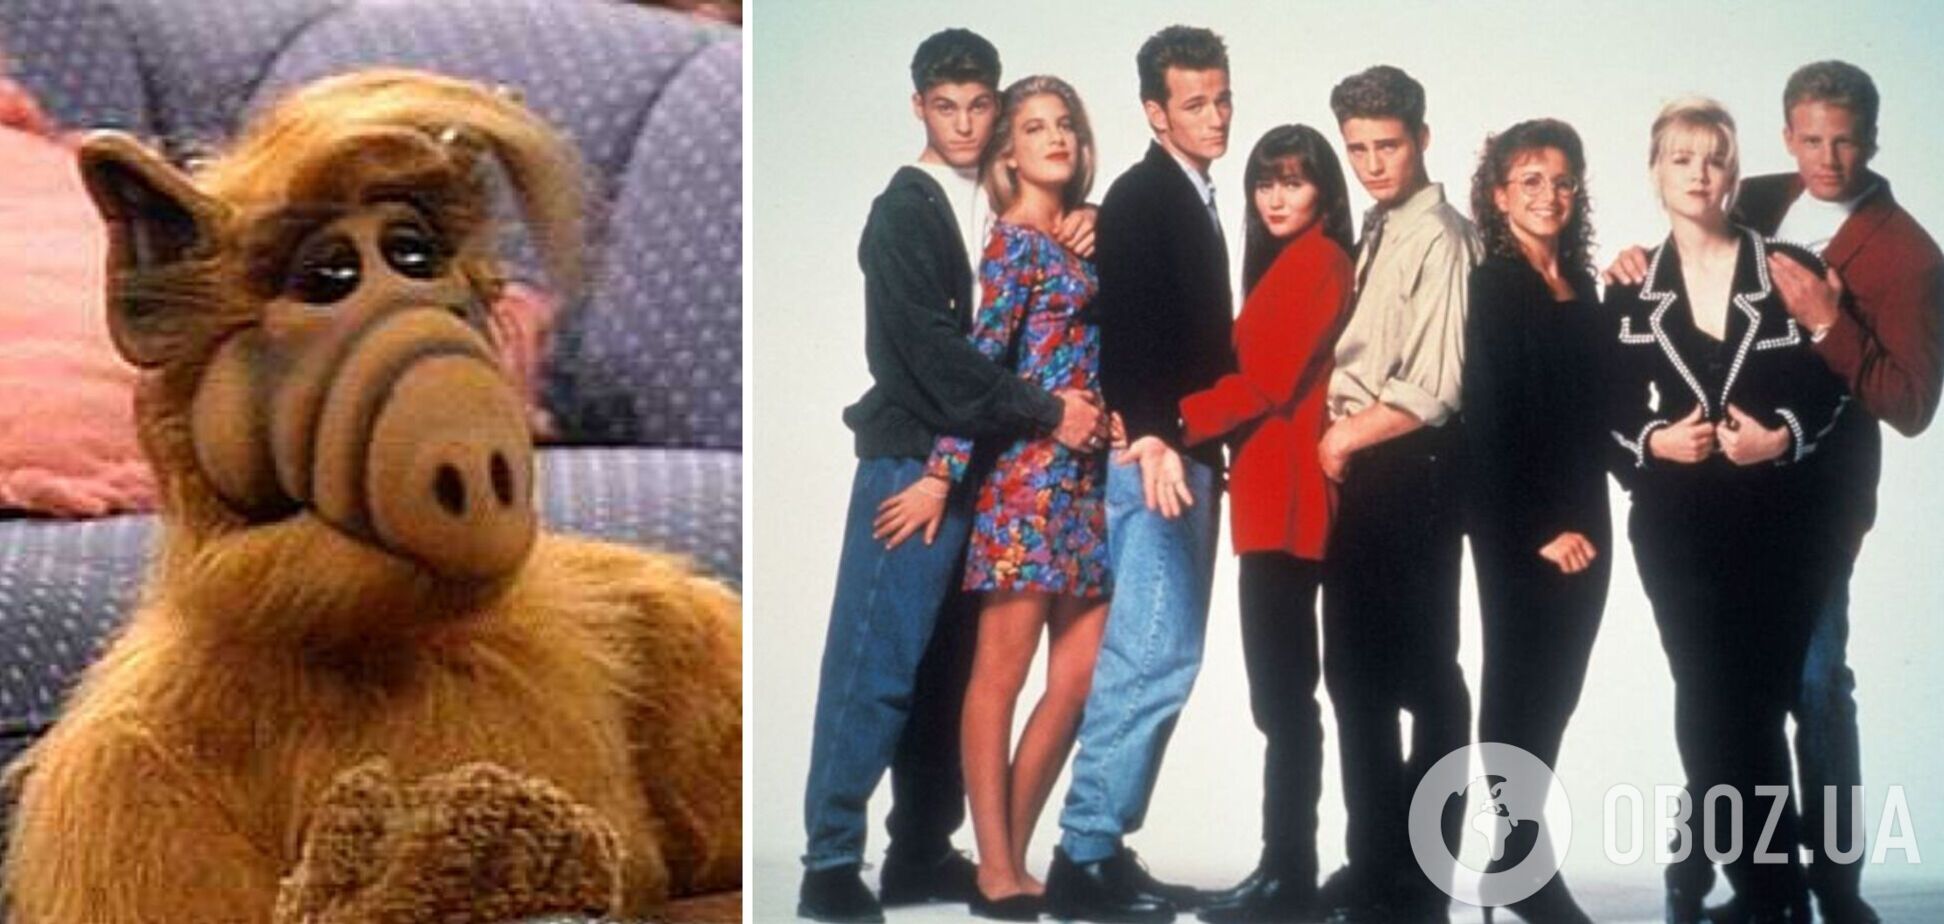 От 'Альфа' до 'Беверли-Хиллз, 90210': 10 культовых сериалов, которые смотрела почти вся молодежь 90-х